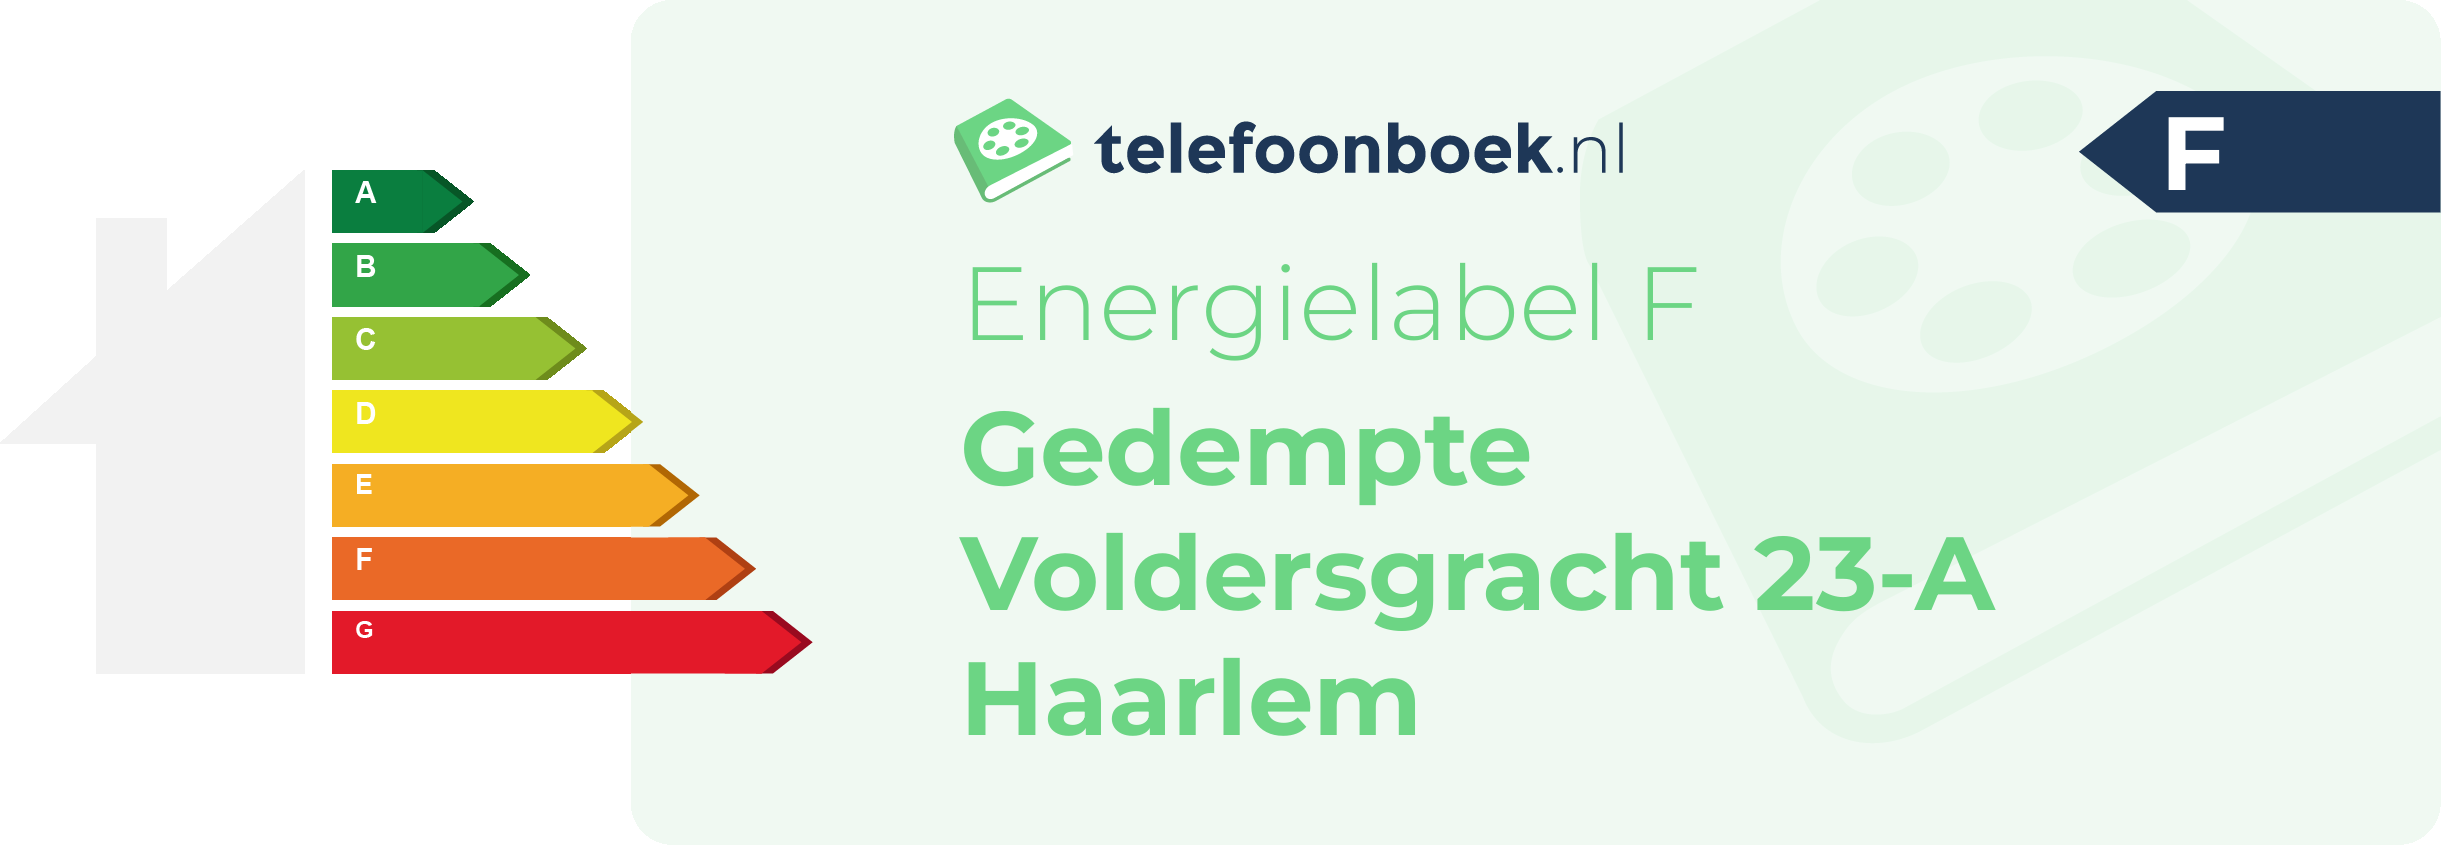 Energielabel Gedempte Voldersgracht 23-A Haarlem